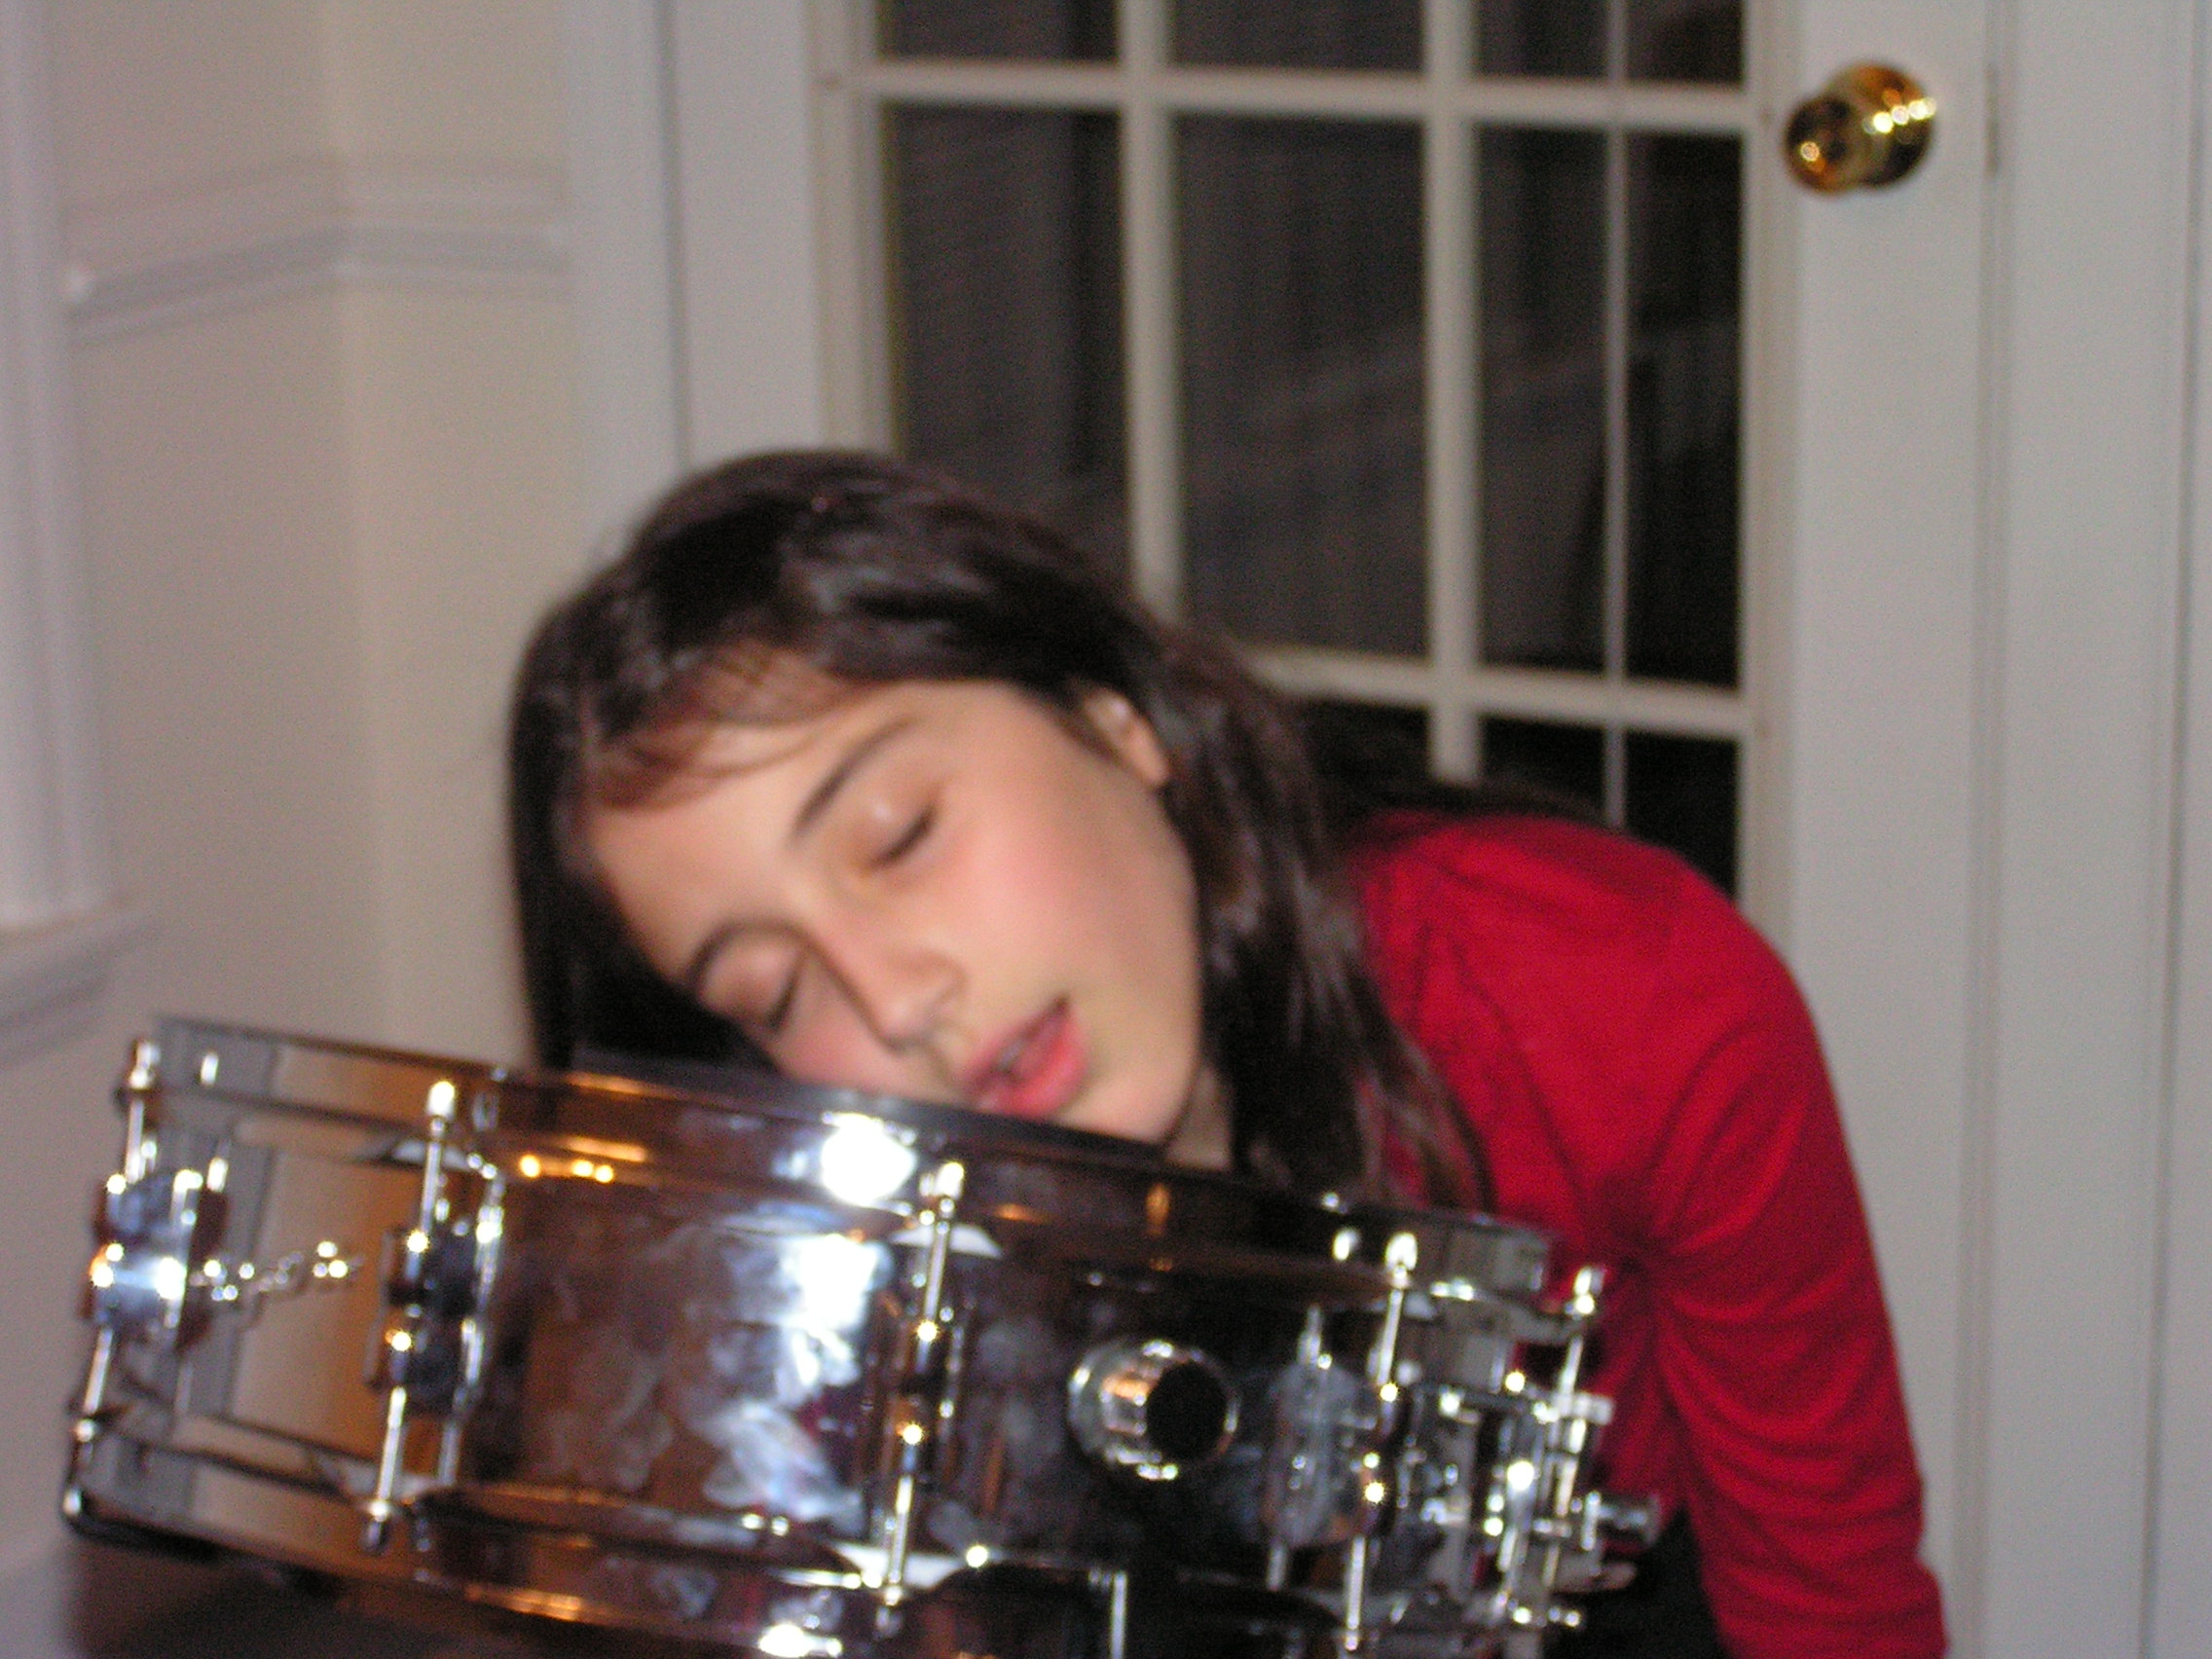 ./2004/Drummer Girl/Drummer Girl 09-04 0006.JPG